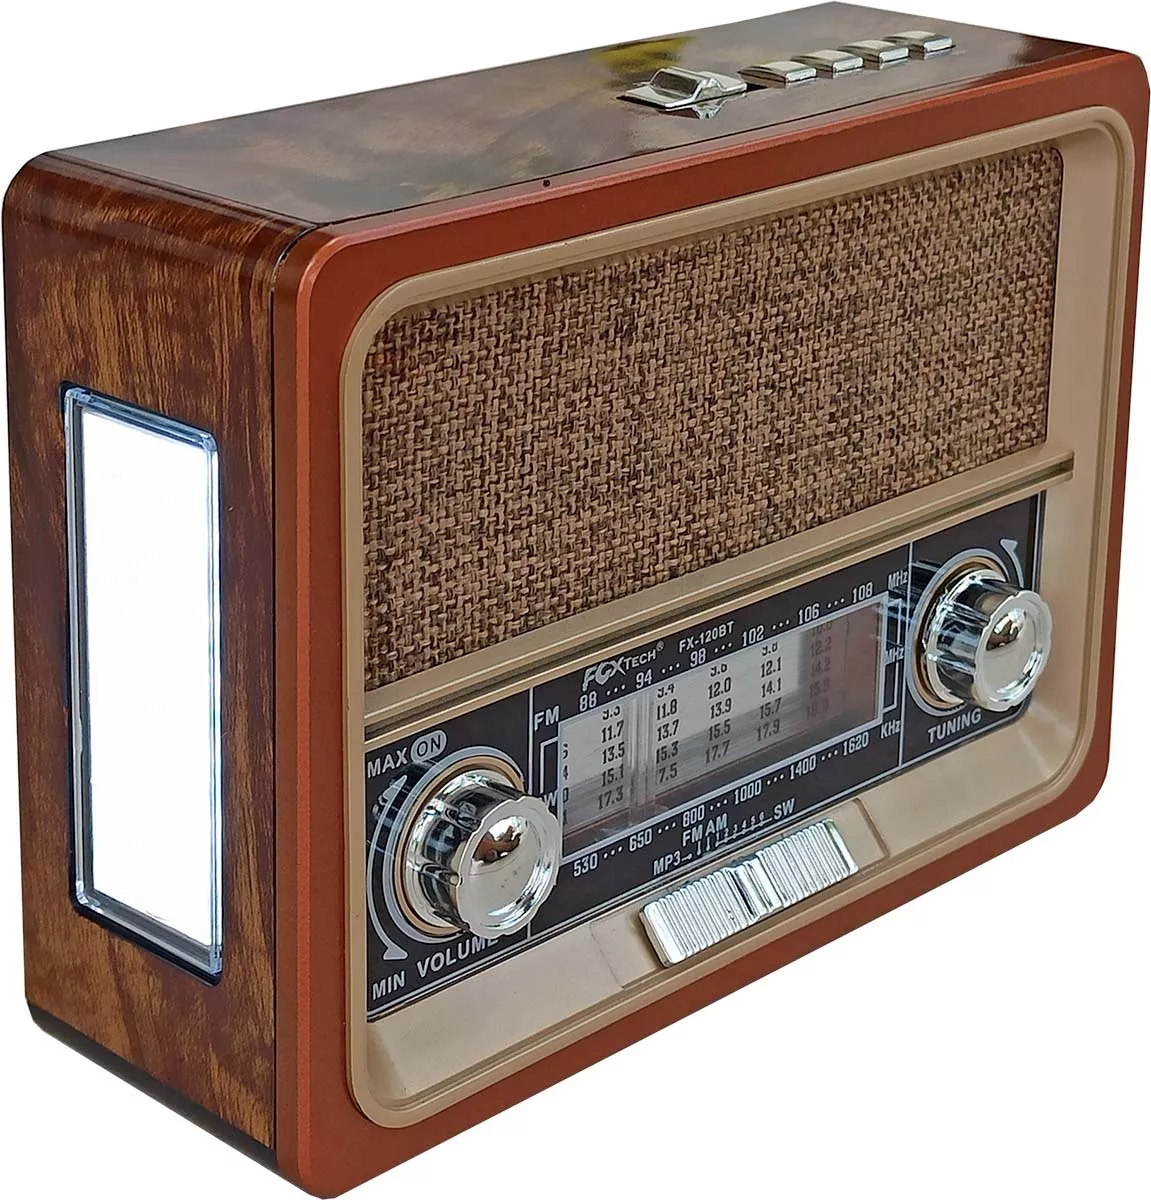 Radio portátil retro con reproductor MP3 - Sonivox Colombia